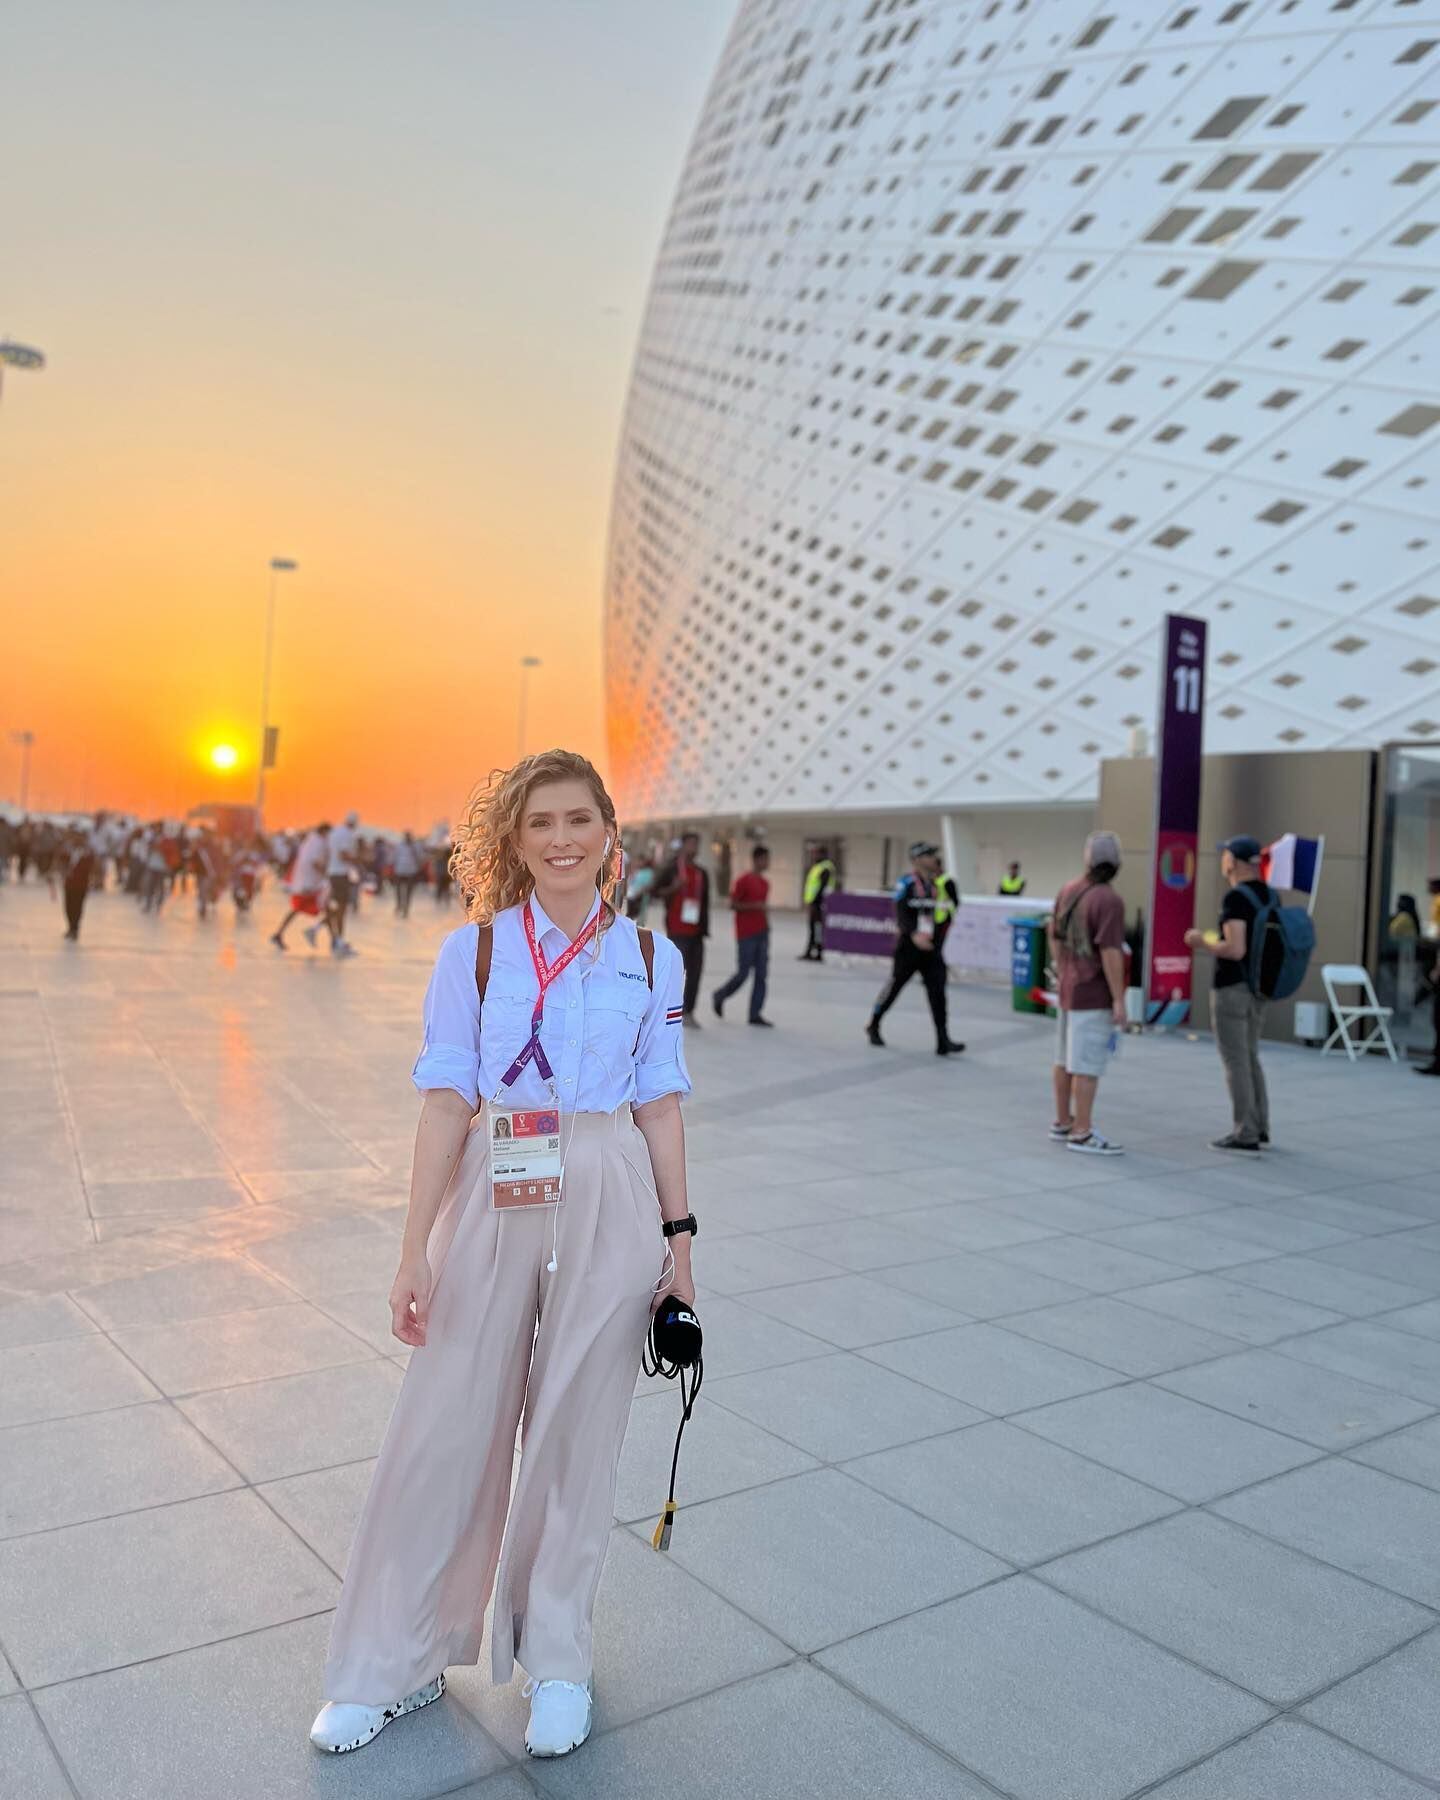 Melissa Alvarado, una de las periodistas deportivas más destacadas del país, celebró su cumpleaños 32 en Qatar. Para ella fue de gran alegría cumplir años haciendo el trabajo que tanto la apasiona. Foto: Cortesía